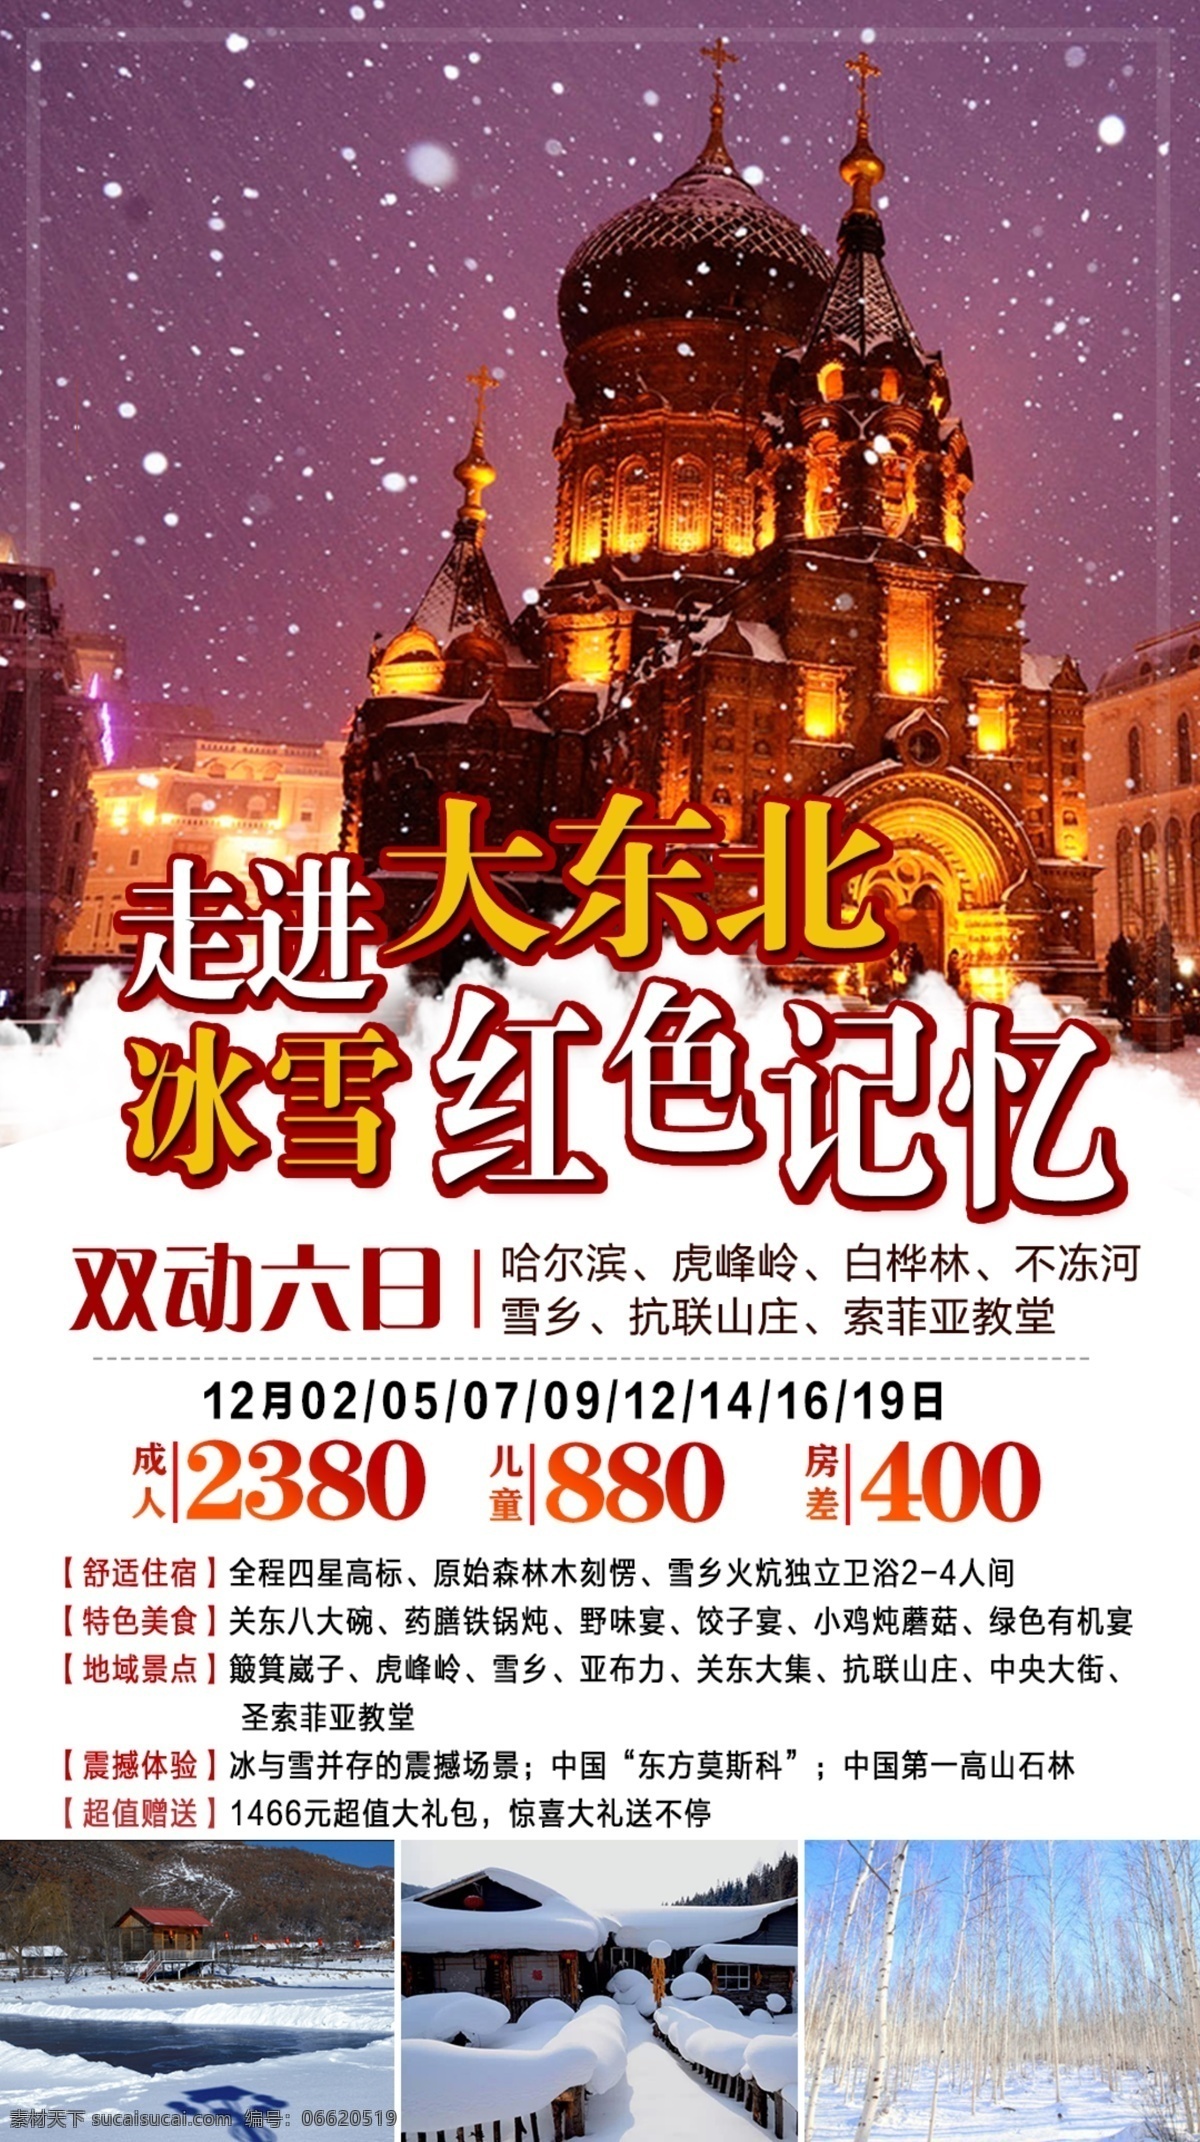 东北 红色 记忆 旅游 微 信 宣传 冰雪 春节 冬季旅游 简约 节日